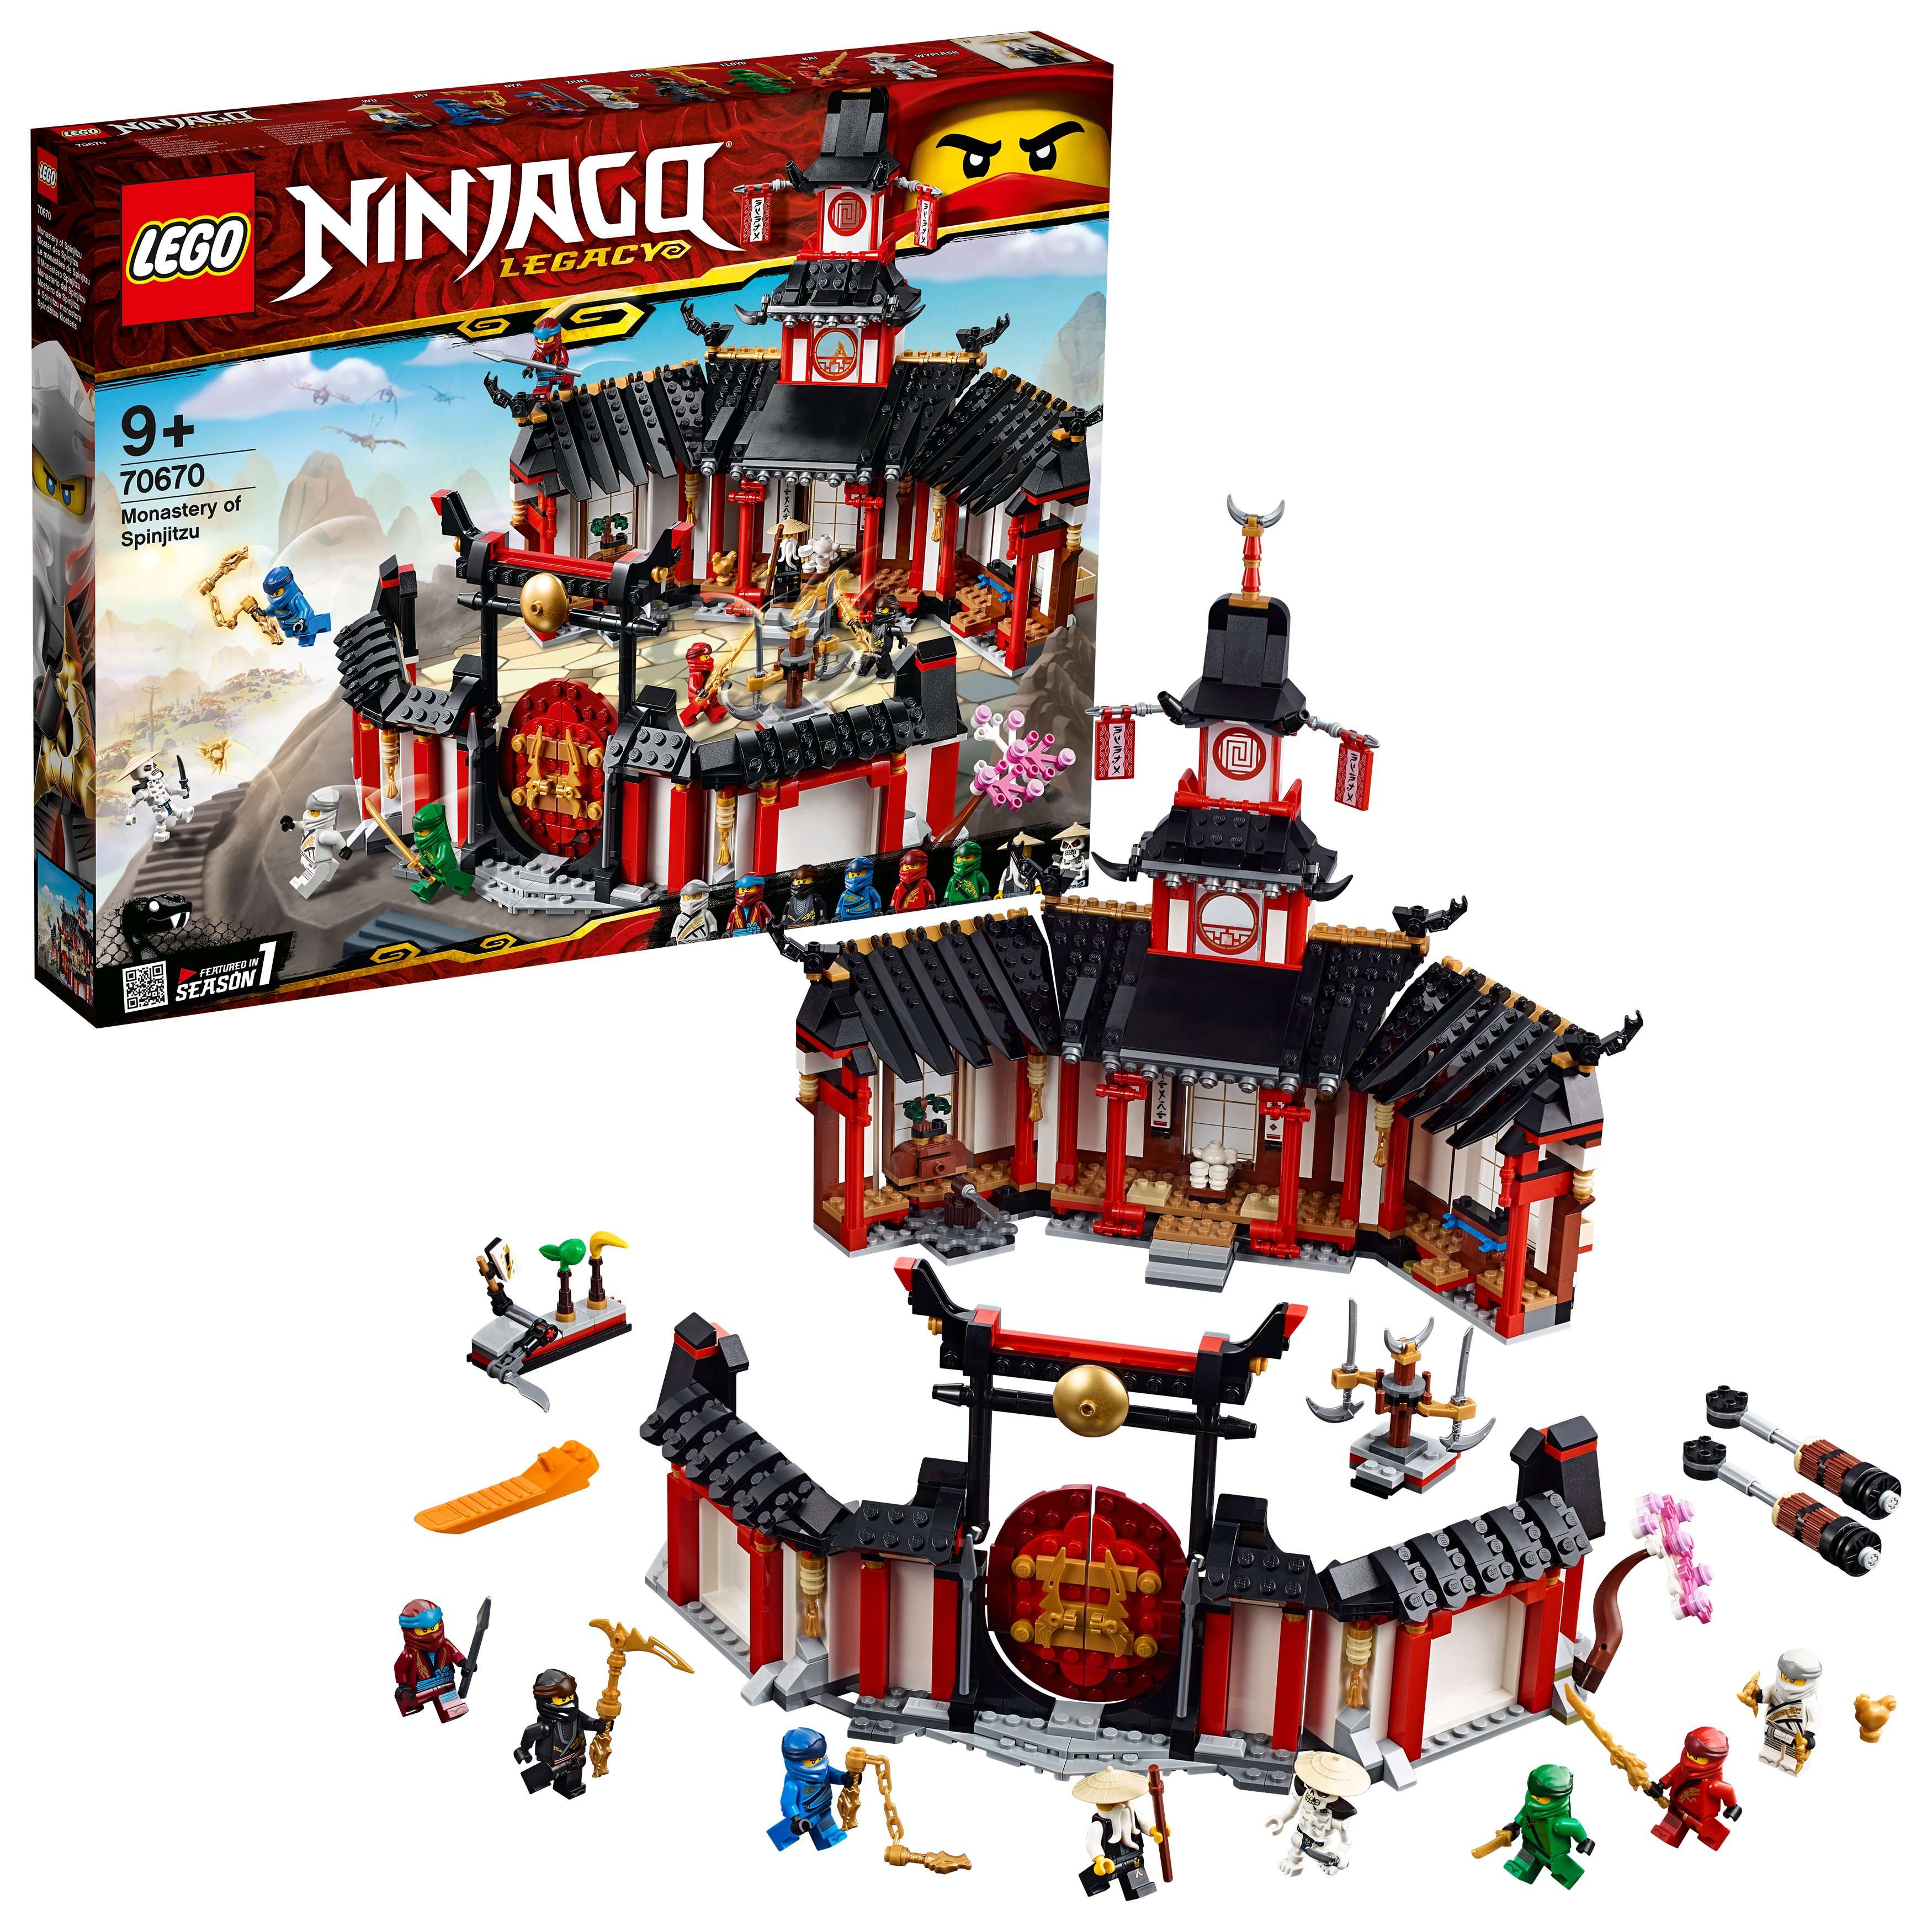 LEGO Ninjago - Monastery of Spinjitzu (70670)